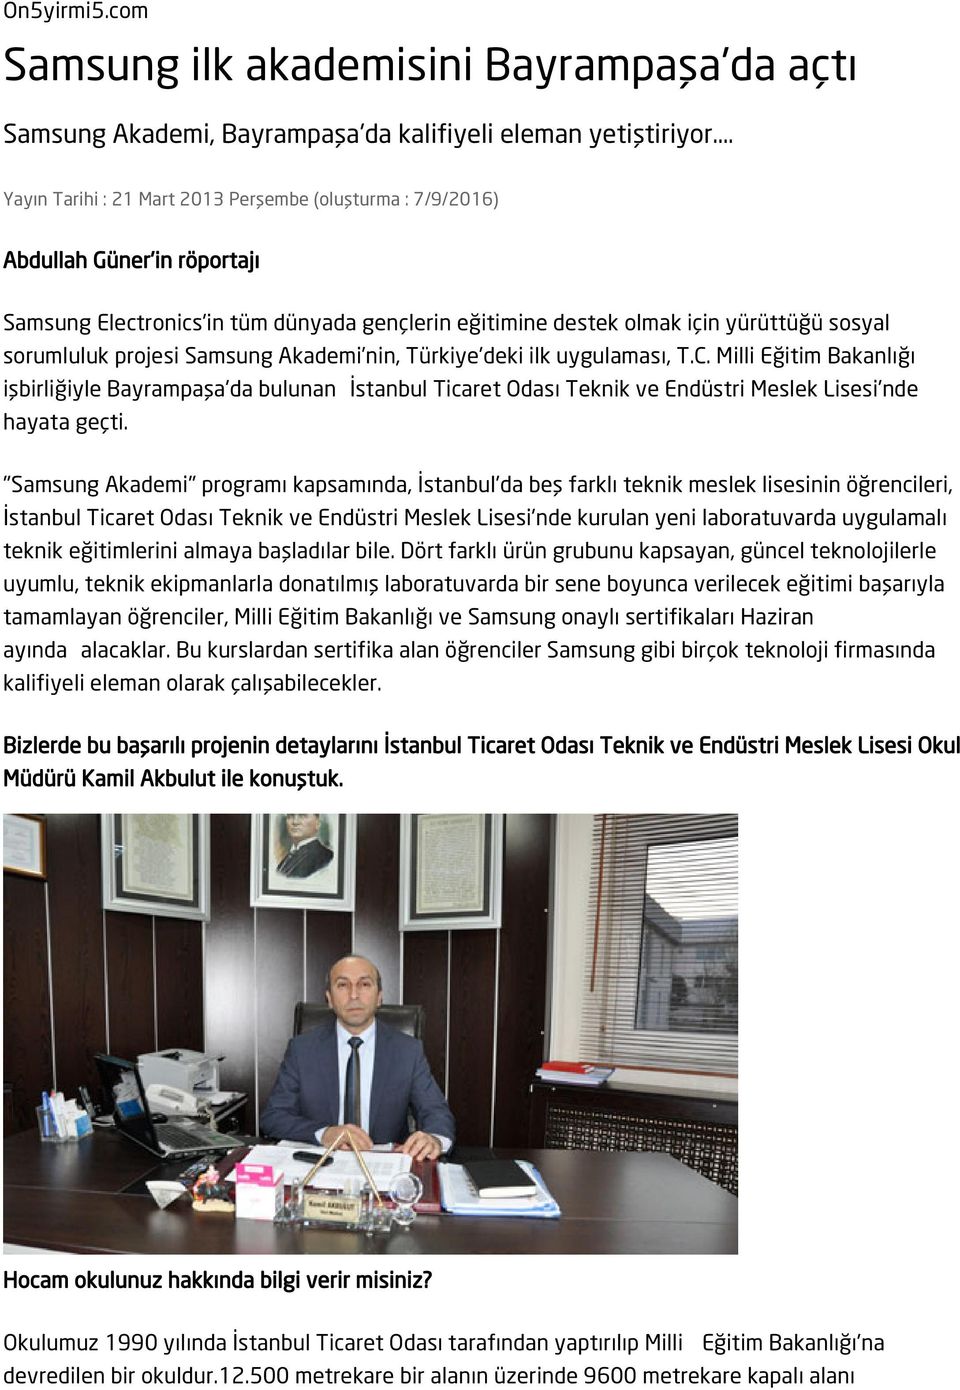 Samsung Akademi nin, Türkiye'deki ilk uygulaması, T.C. Milli Eğitim Bakanlığı işbirliğiyle Bayrampaşa'da bulunan İstanbul Ticaret Odası Teknik ve Endüstri Meslek Lisesi'nde hayata geçti.